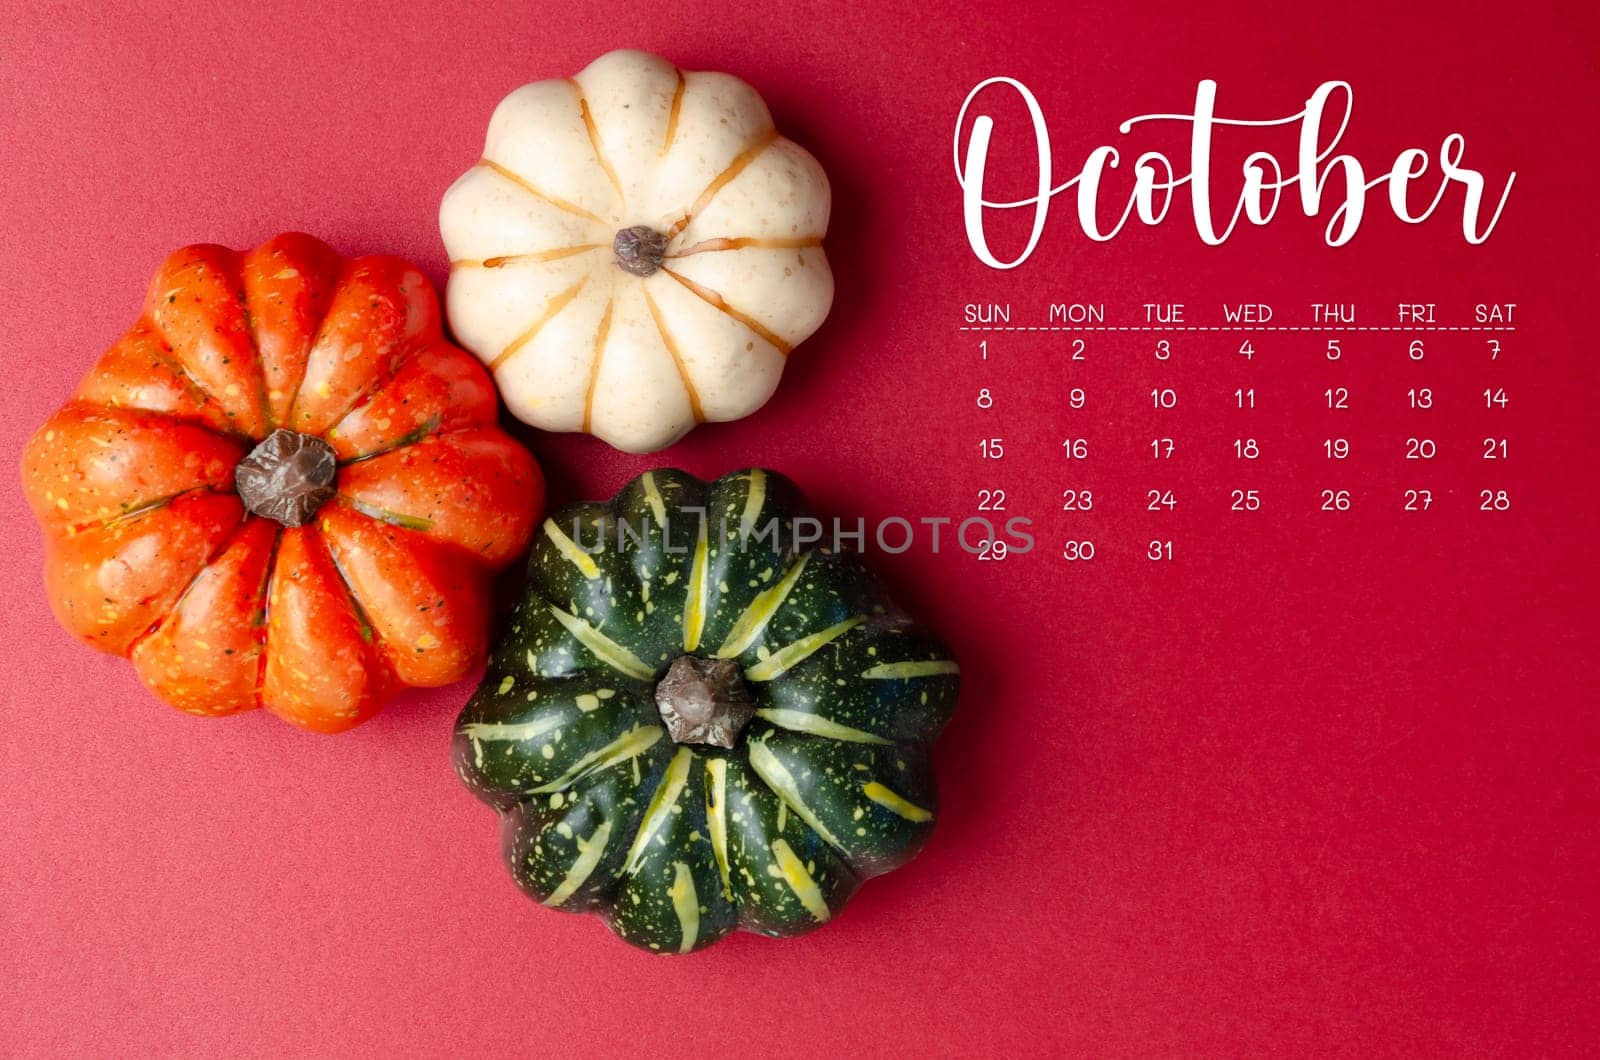 October 2023 Calendar and pumpkins on red cardboard background.